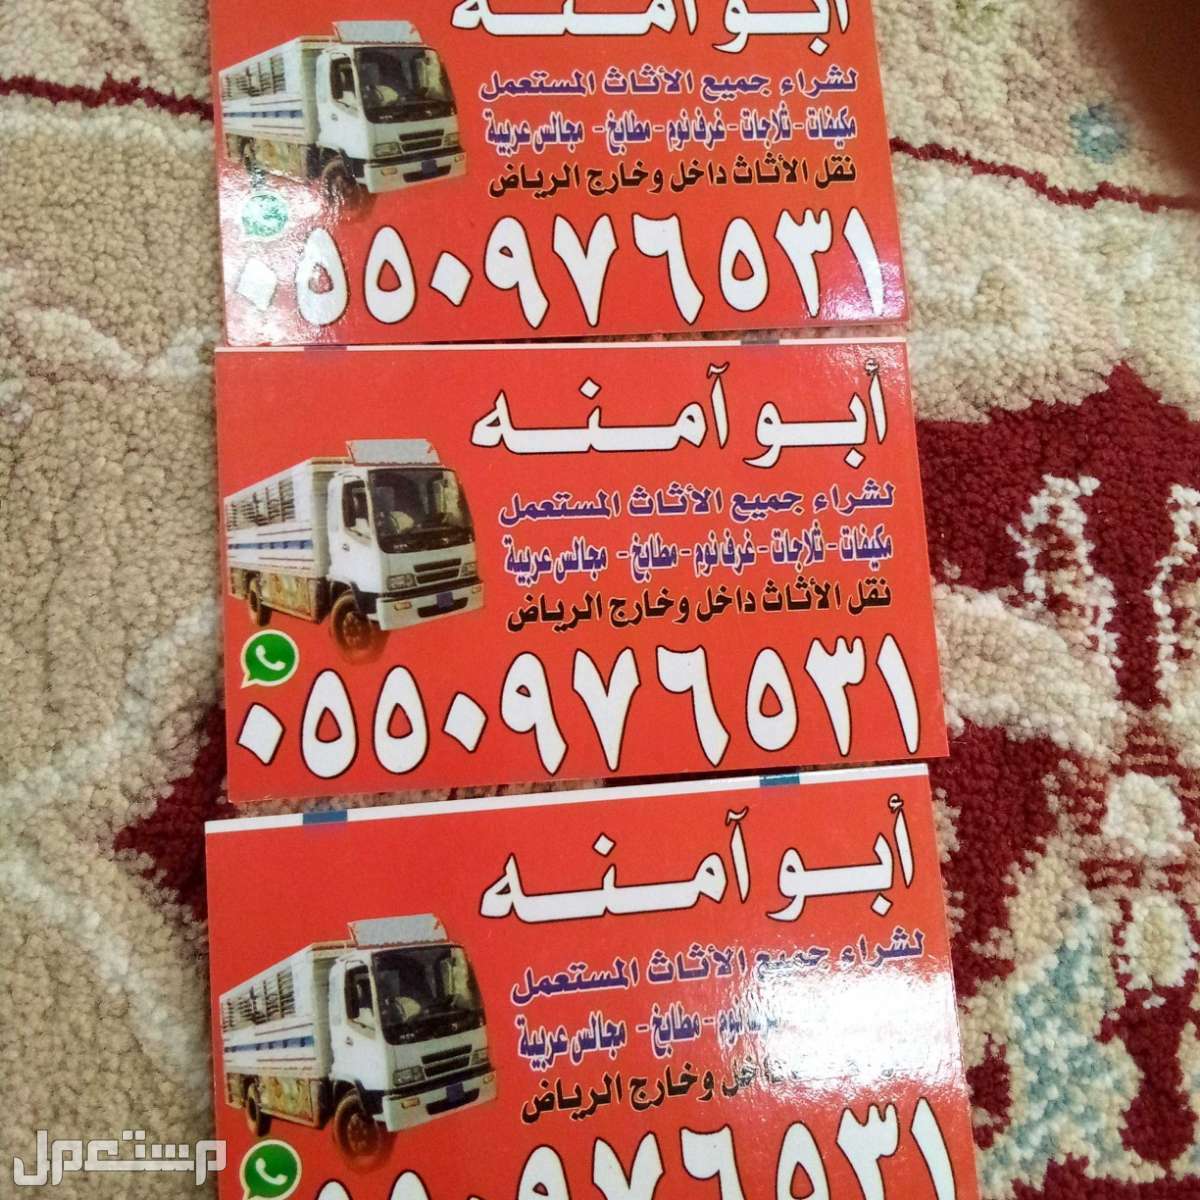 ابو موده لشراء المكيفات المستعمله بحي المربع في الرياض بسعر 300 ريال سعودي